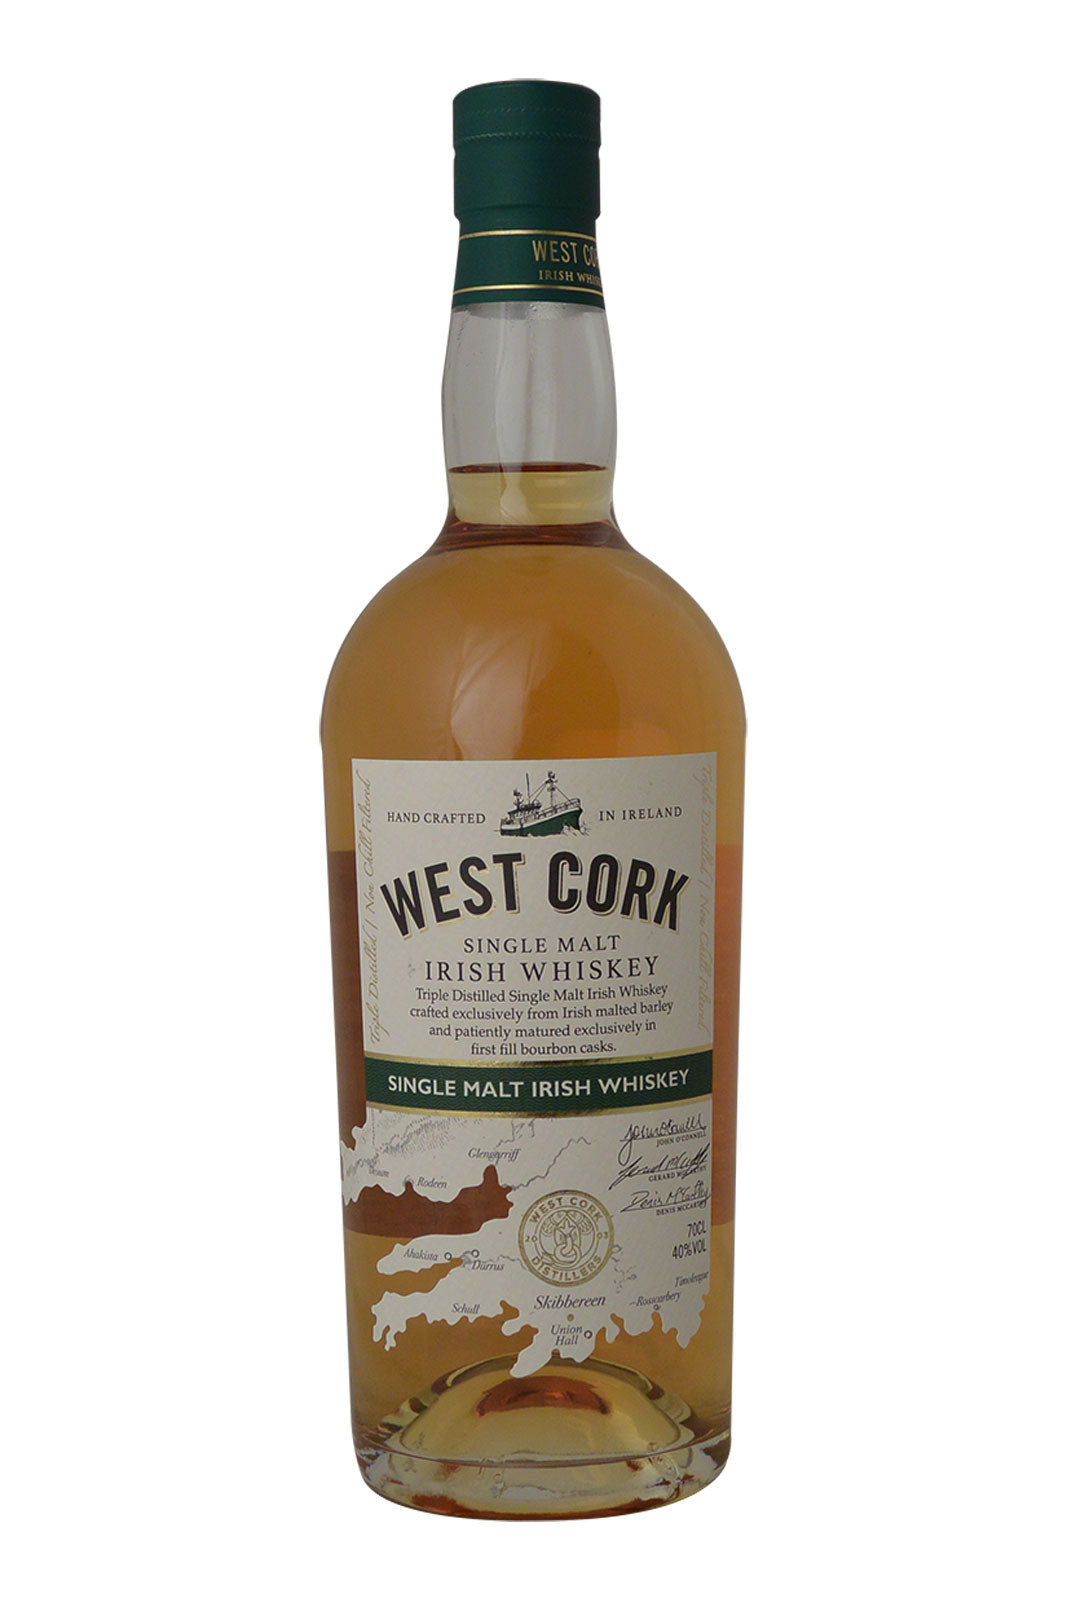 West Cork Single Malt Irish Whiskey -  First Fill Bourbon Casks